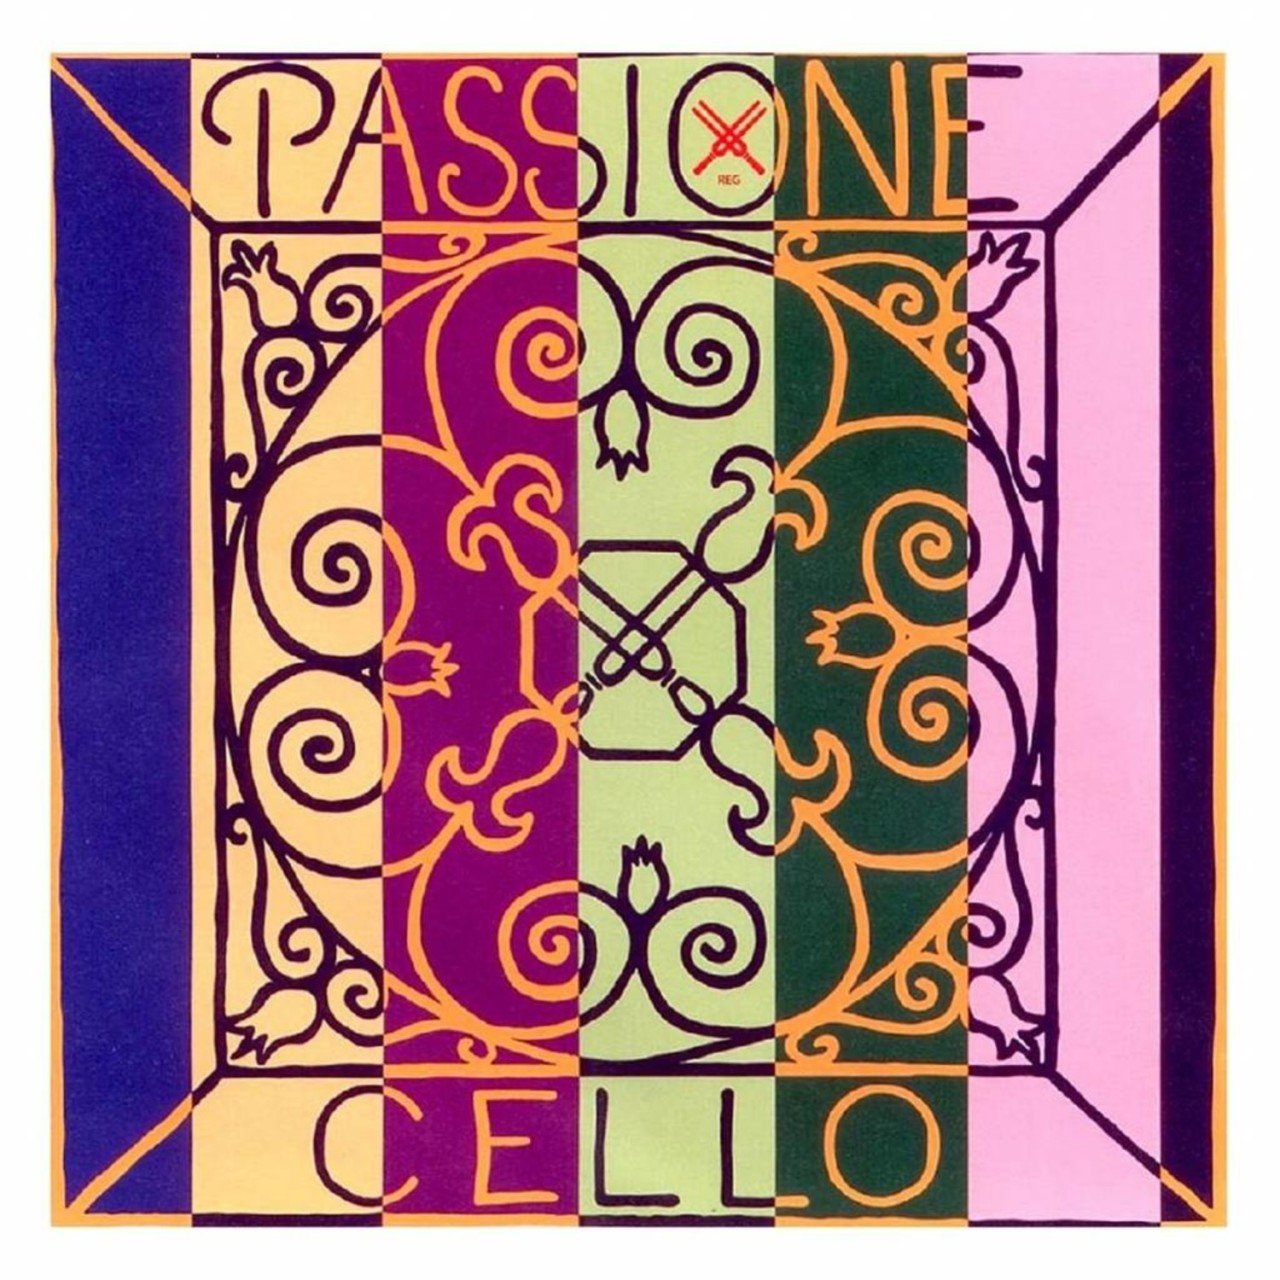 Pirastro Passione Left (G) Cello String